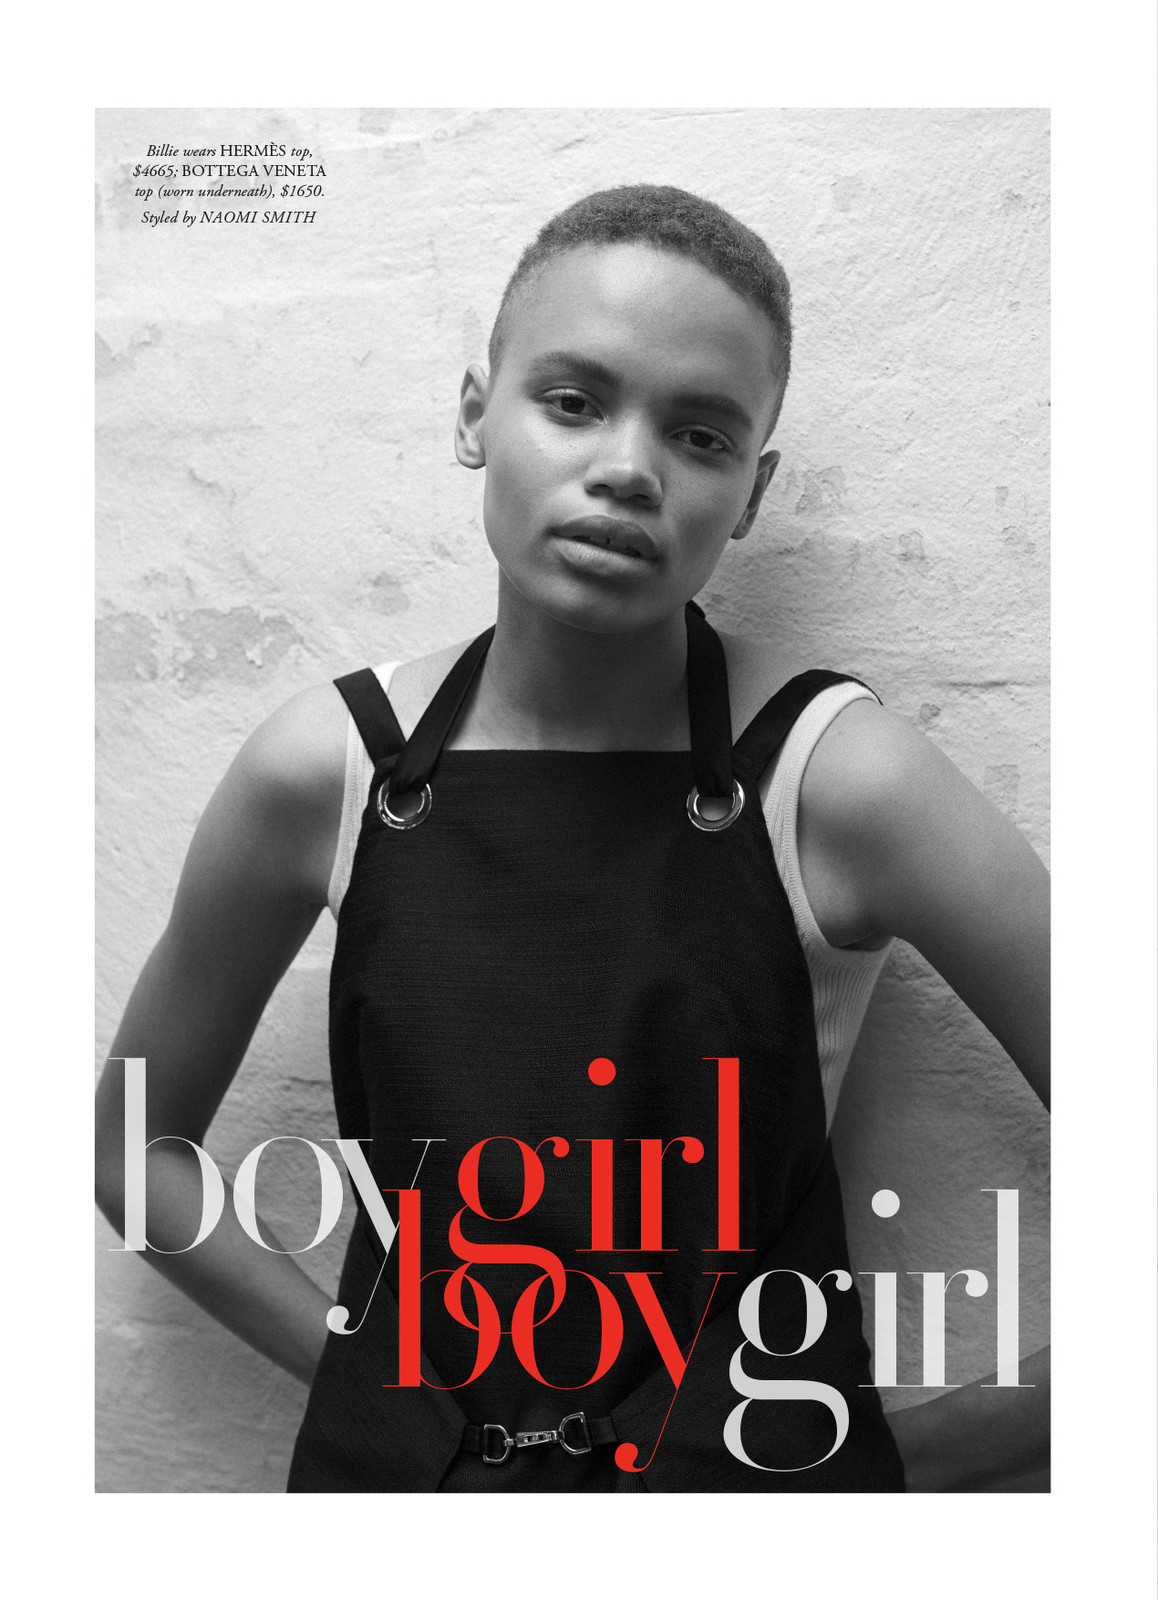 Boy Girl Boy Girl - Harper's Bazaar Australia